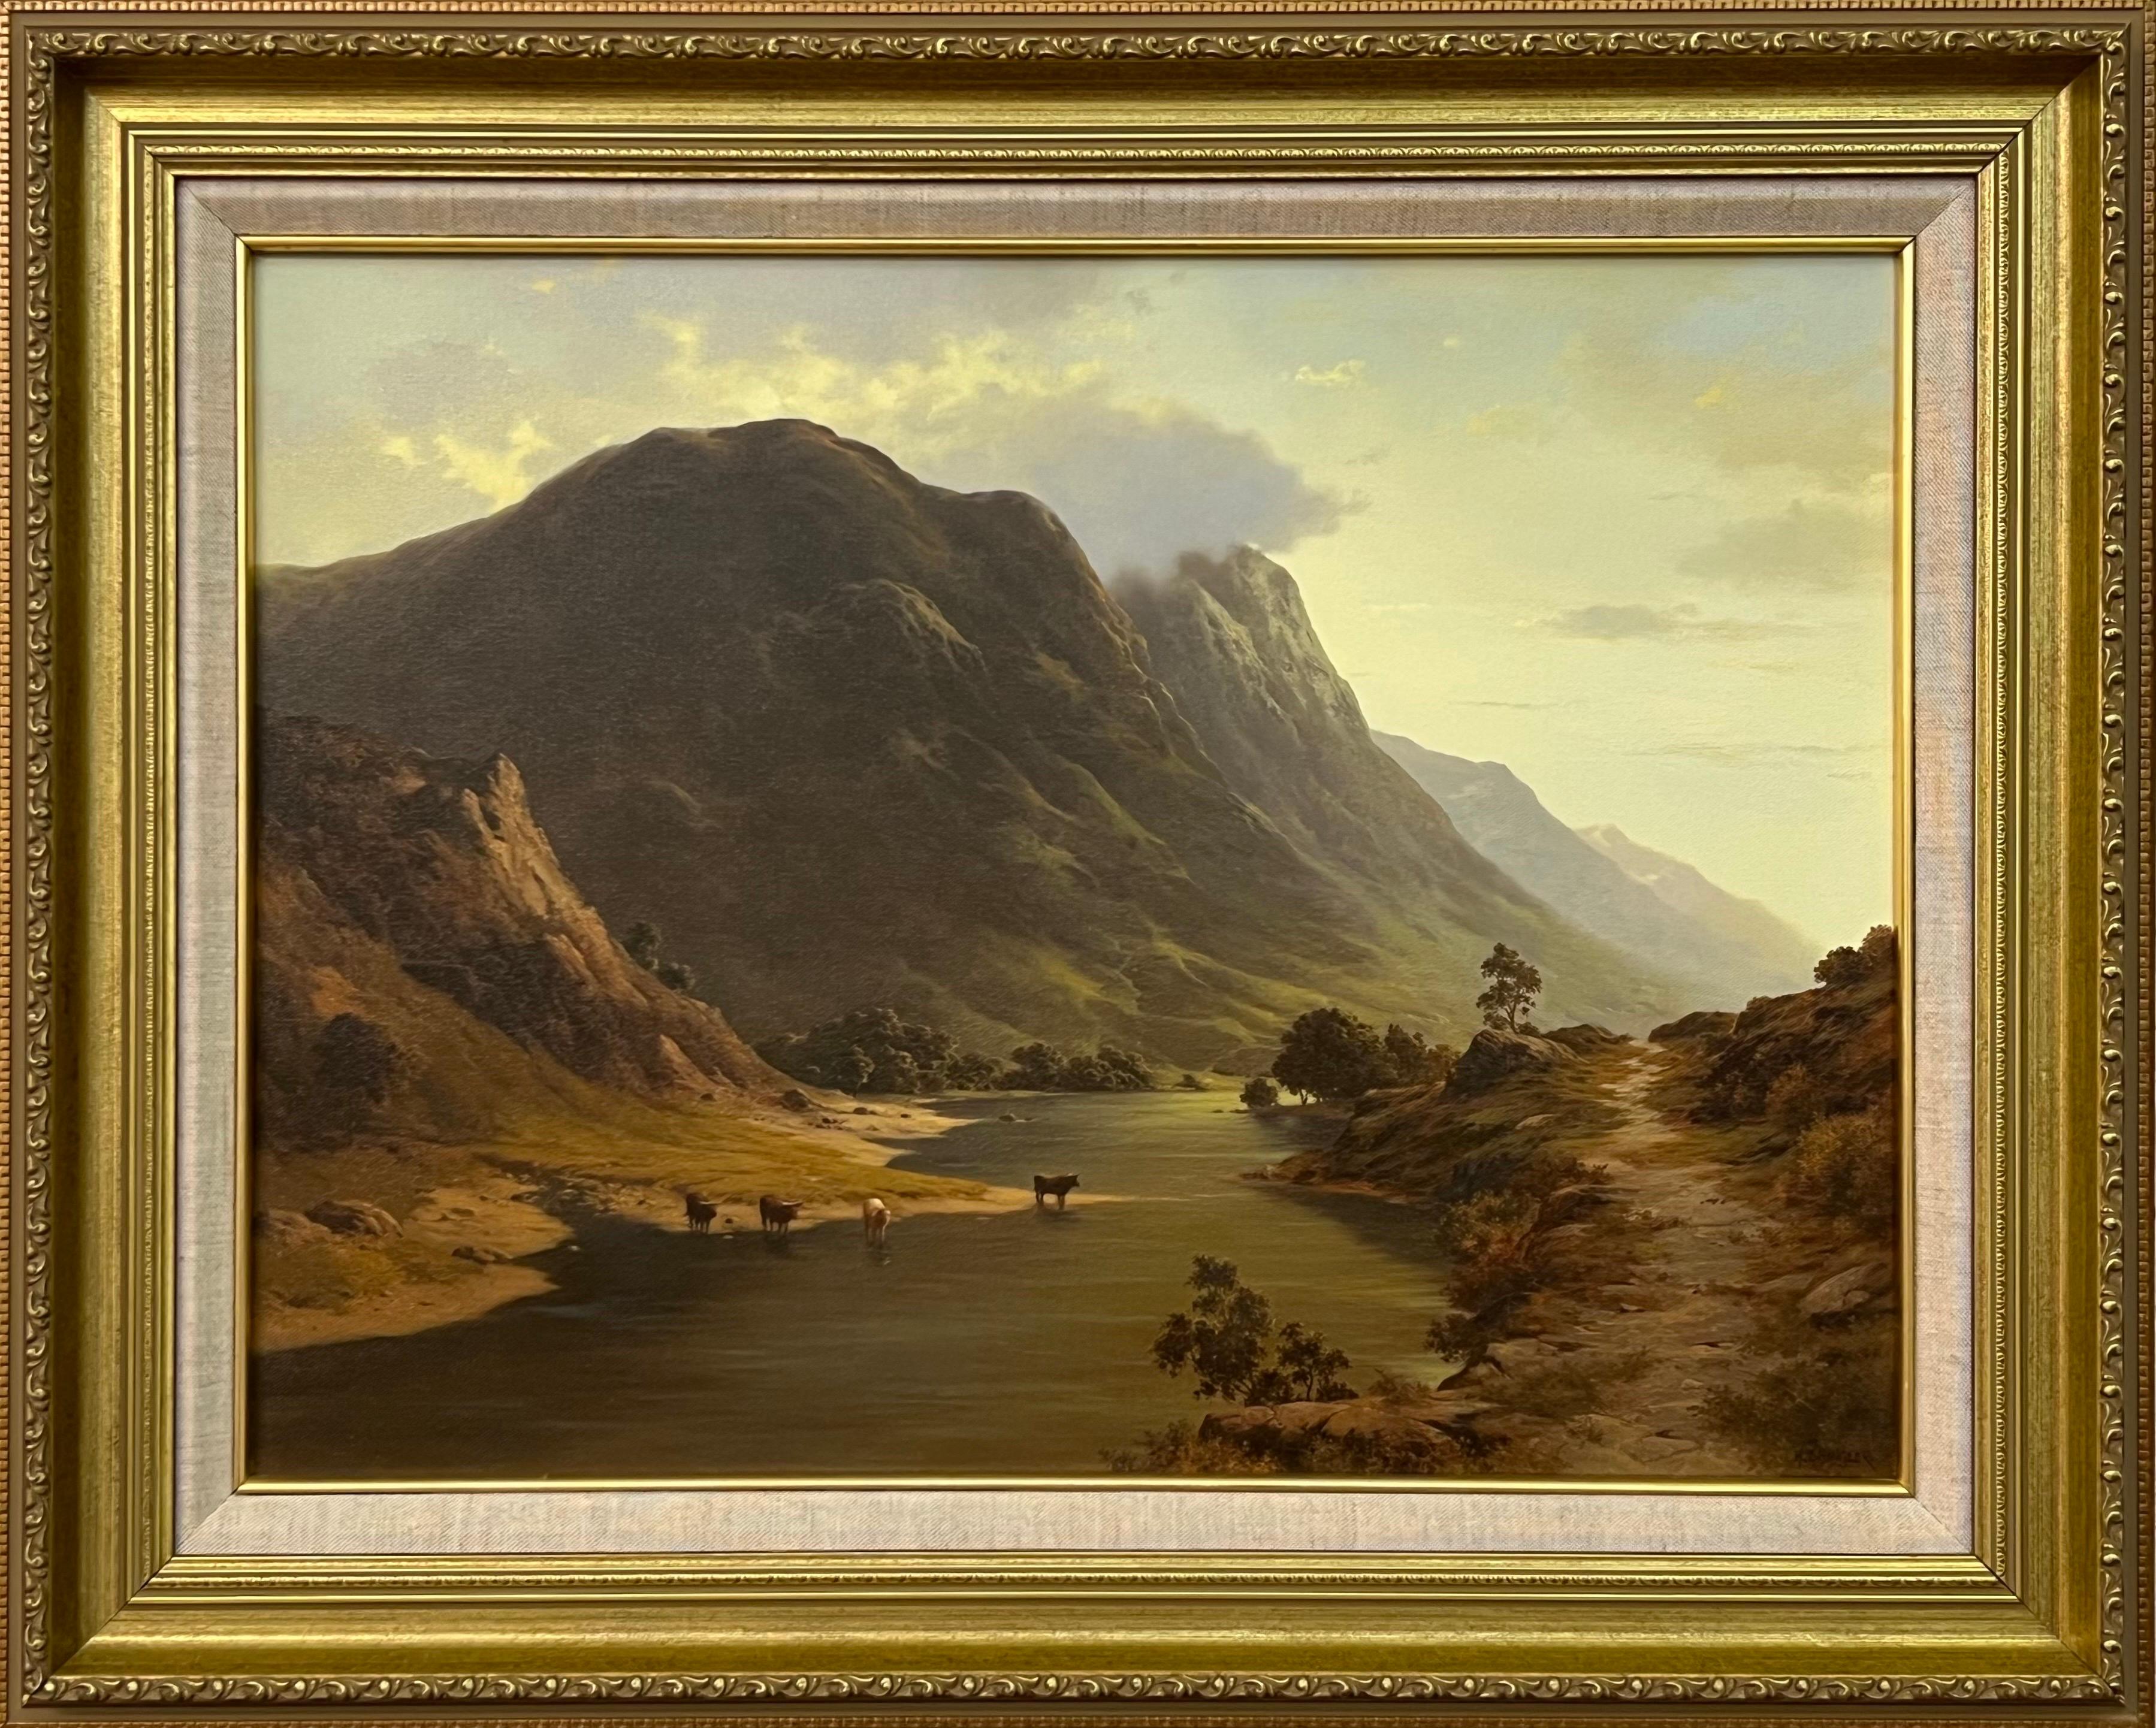 Landscape Painting Howard Shingler - Bouilloire boignant de l'eau d'un Loch dans les montagnes des Highlands écossaises